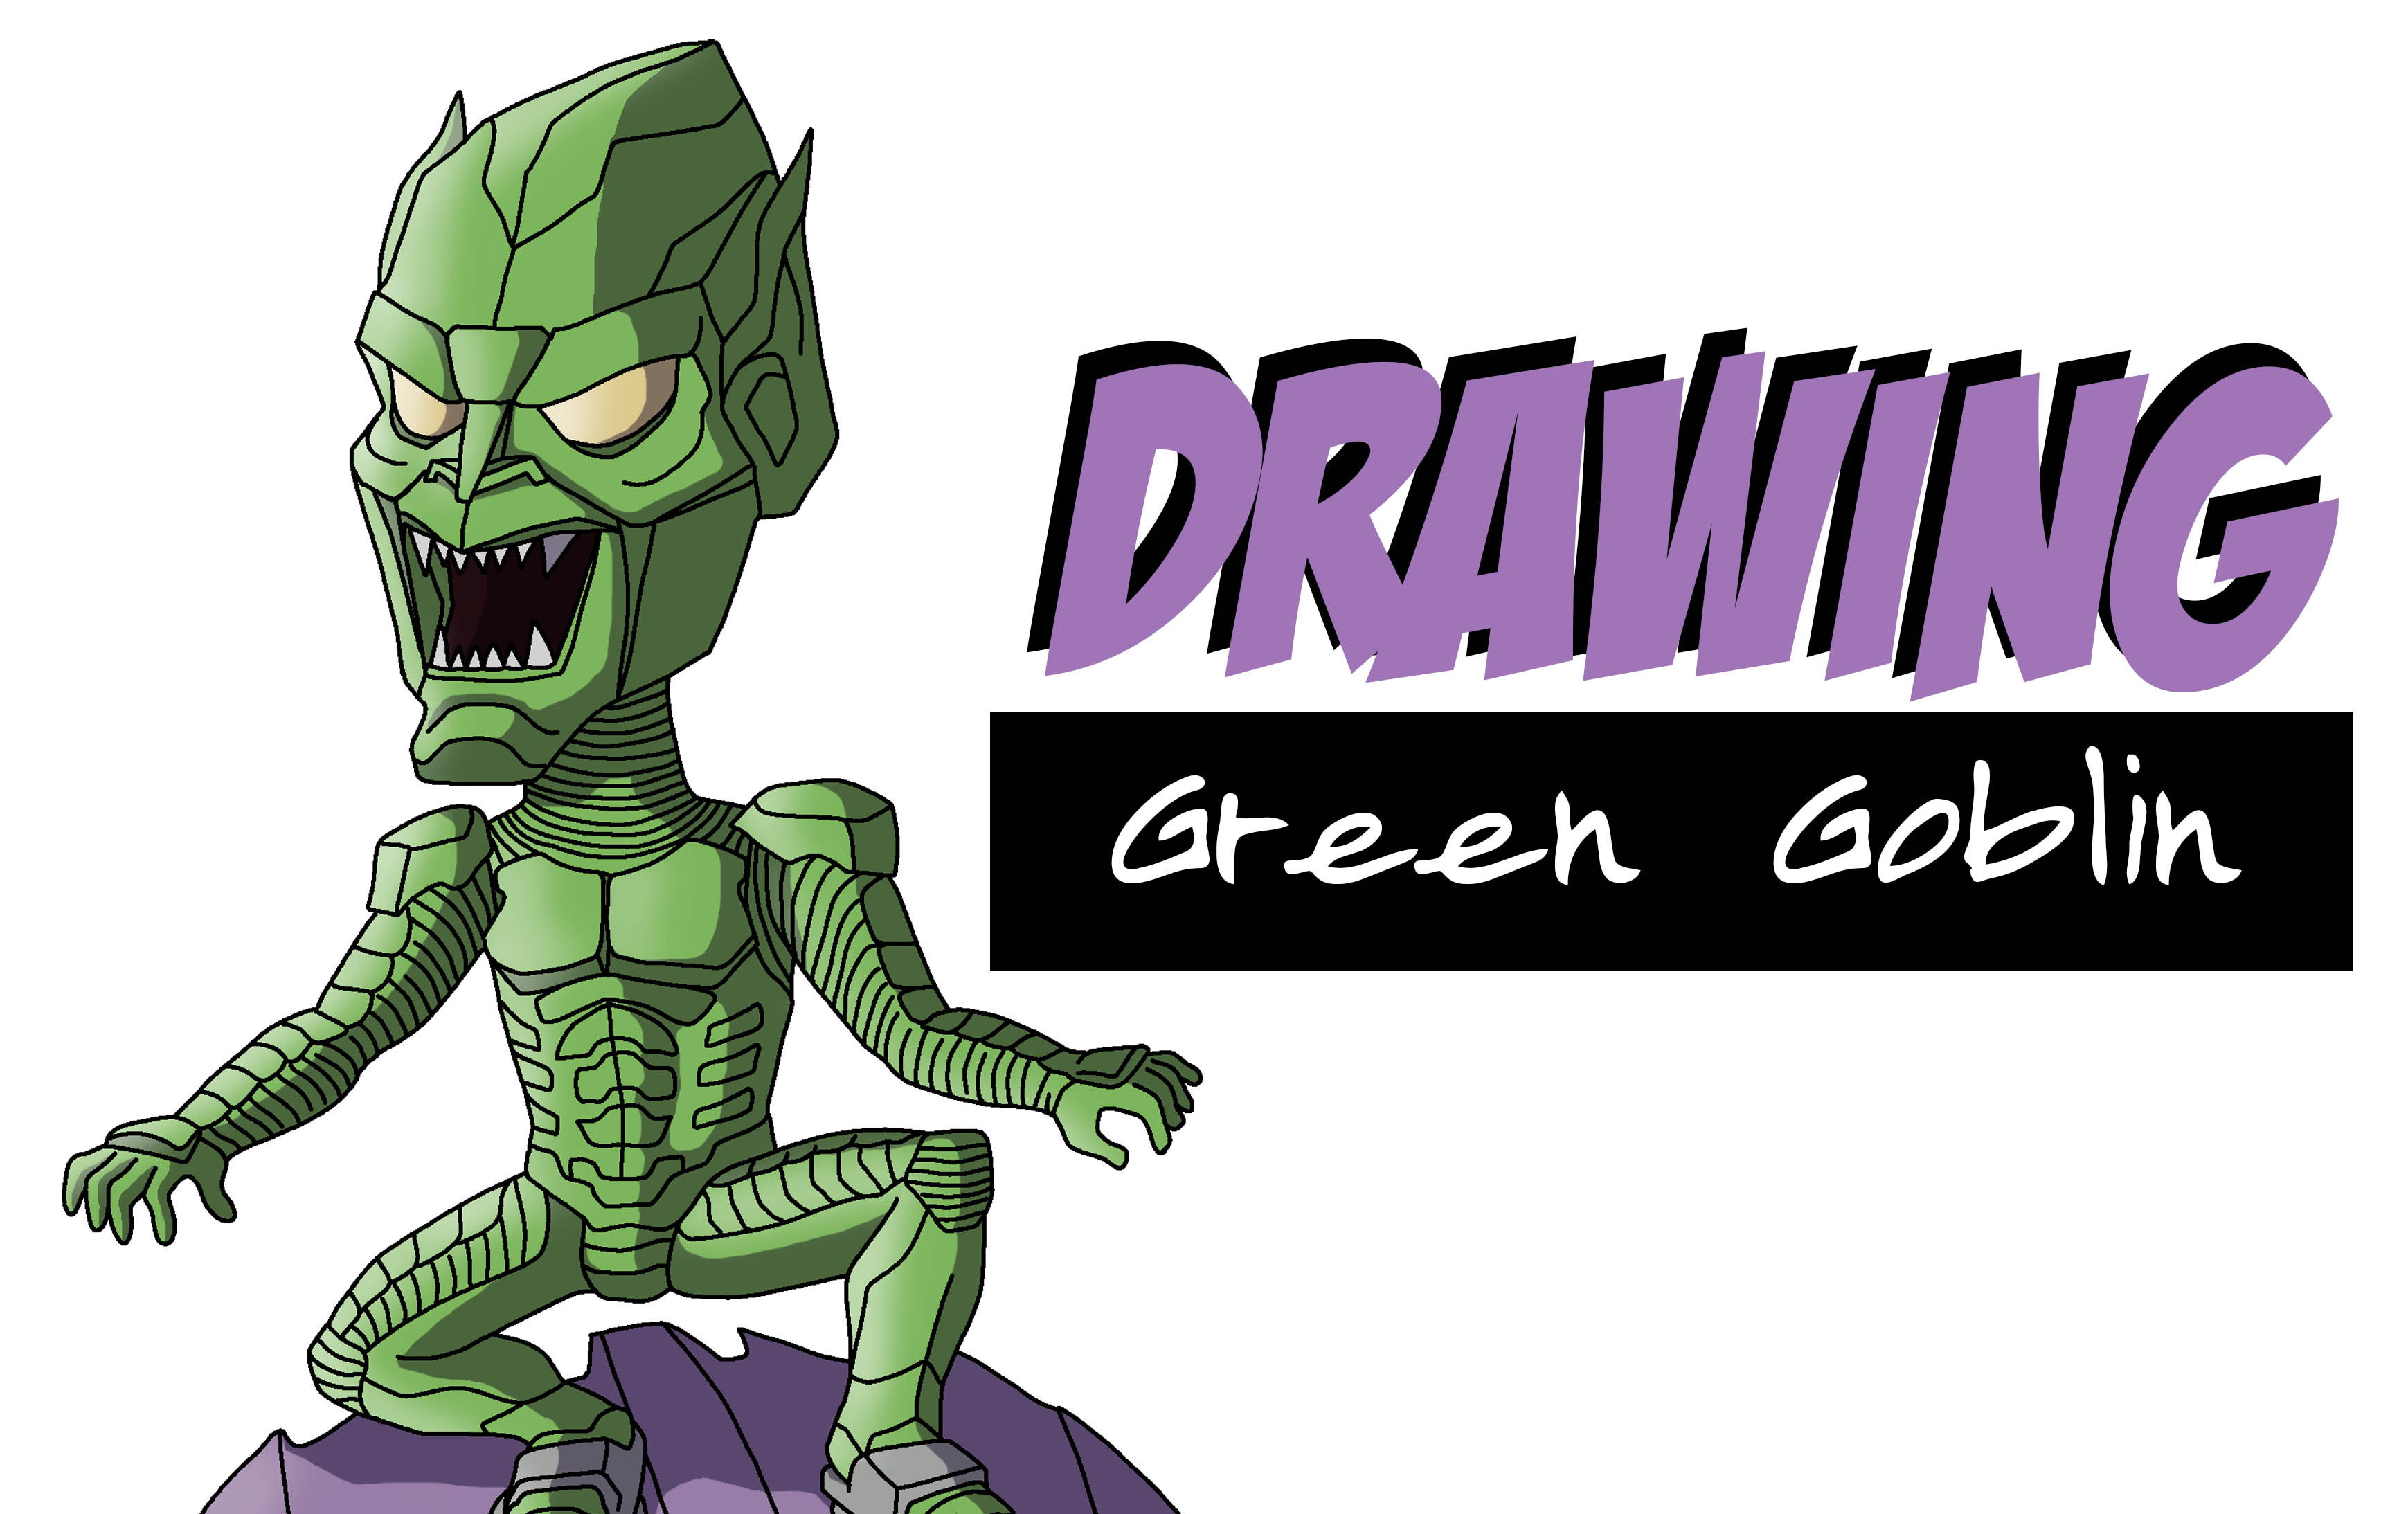 Desenhando Duende Verde - Willem Dafoe - Speed Drawing